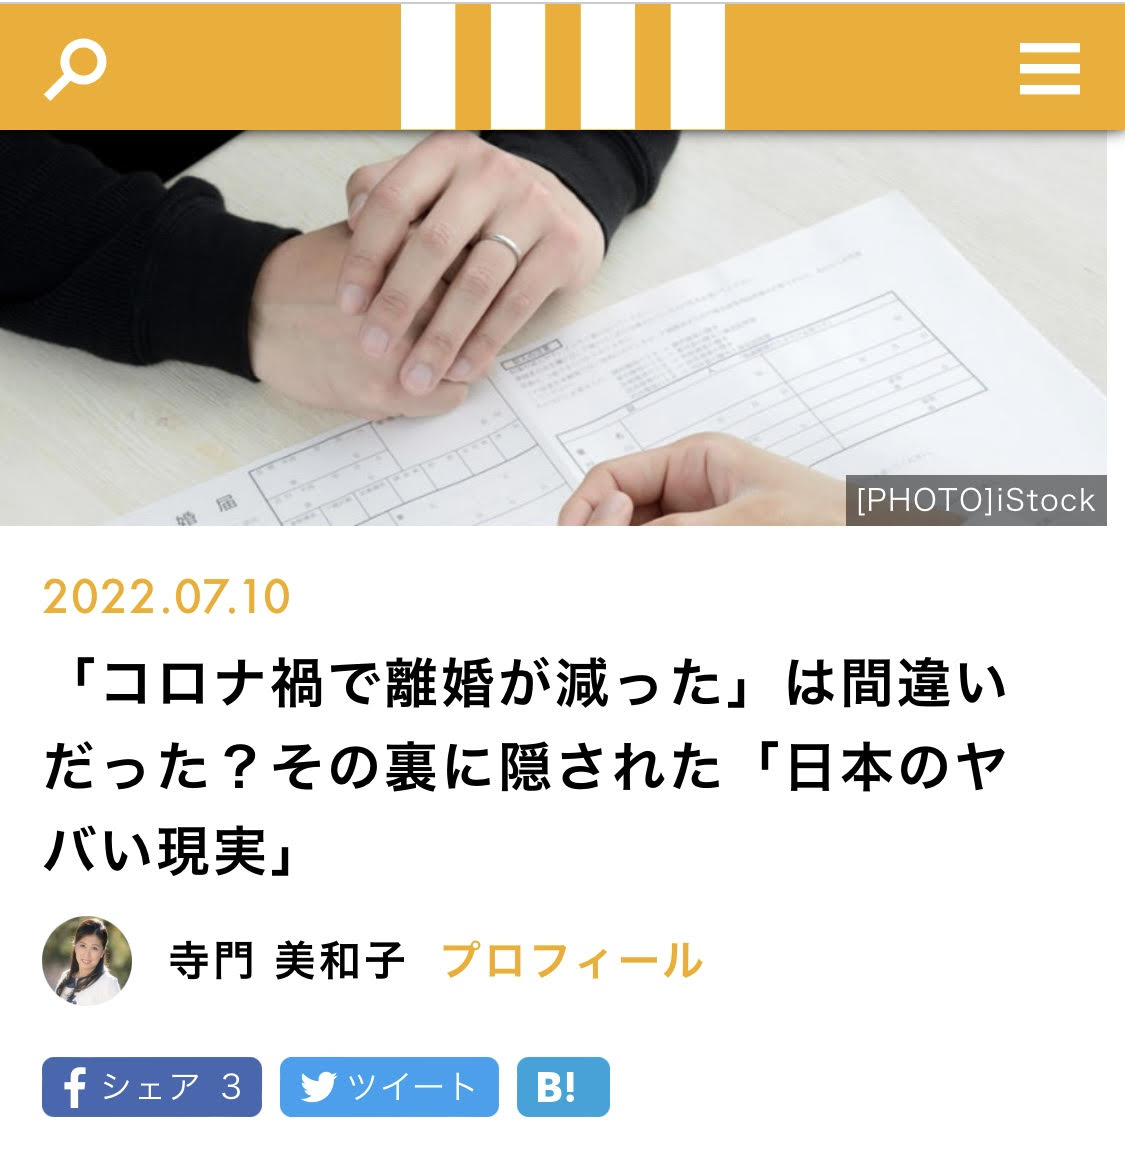 【メディア実績】マネー現代「コロナ渦で離婚が減った」は間違えだった？その裏に隠された「日本のヤバイ現実」